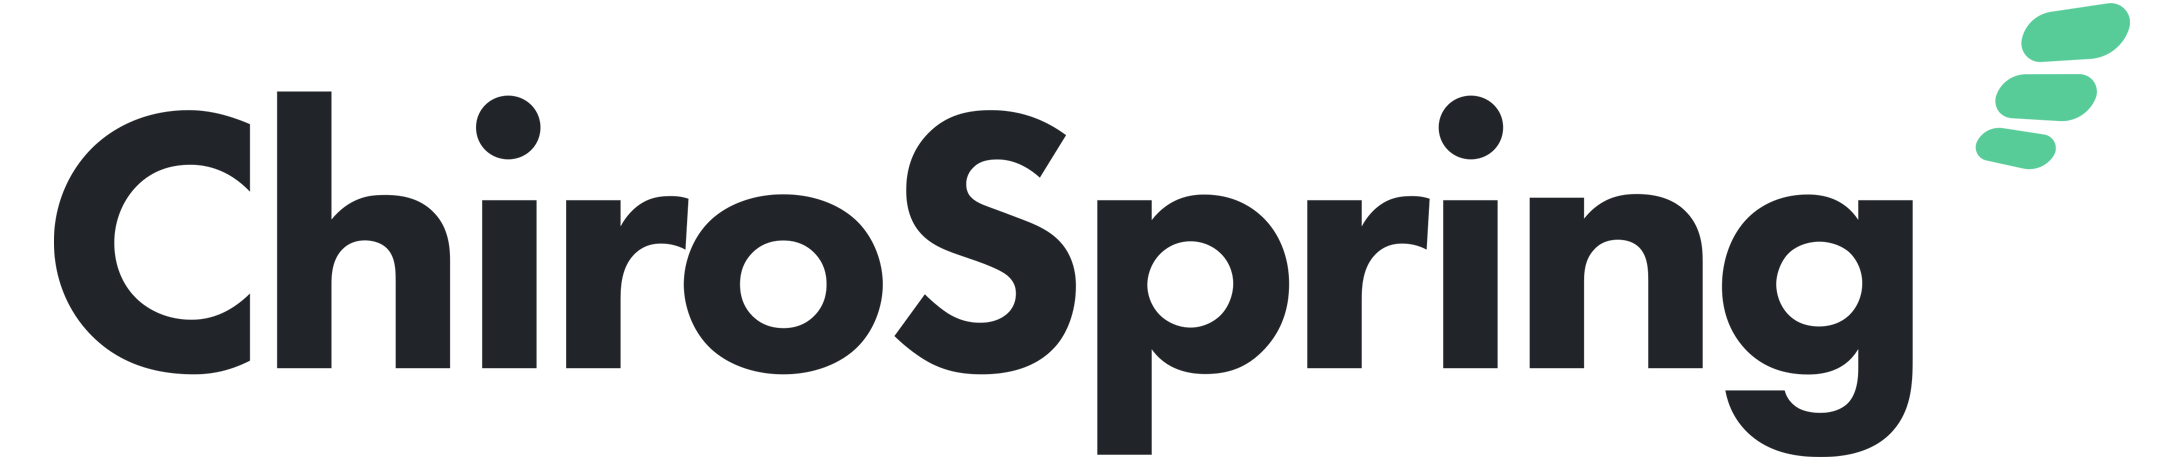 ChiroSpring logo